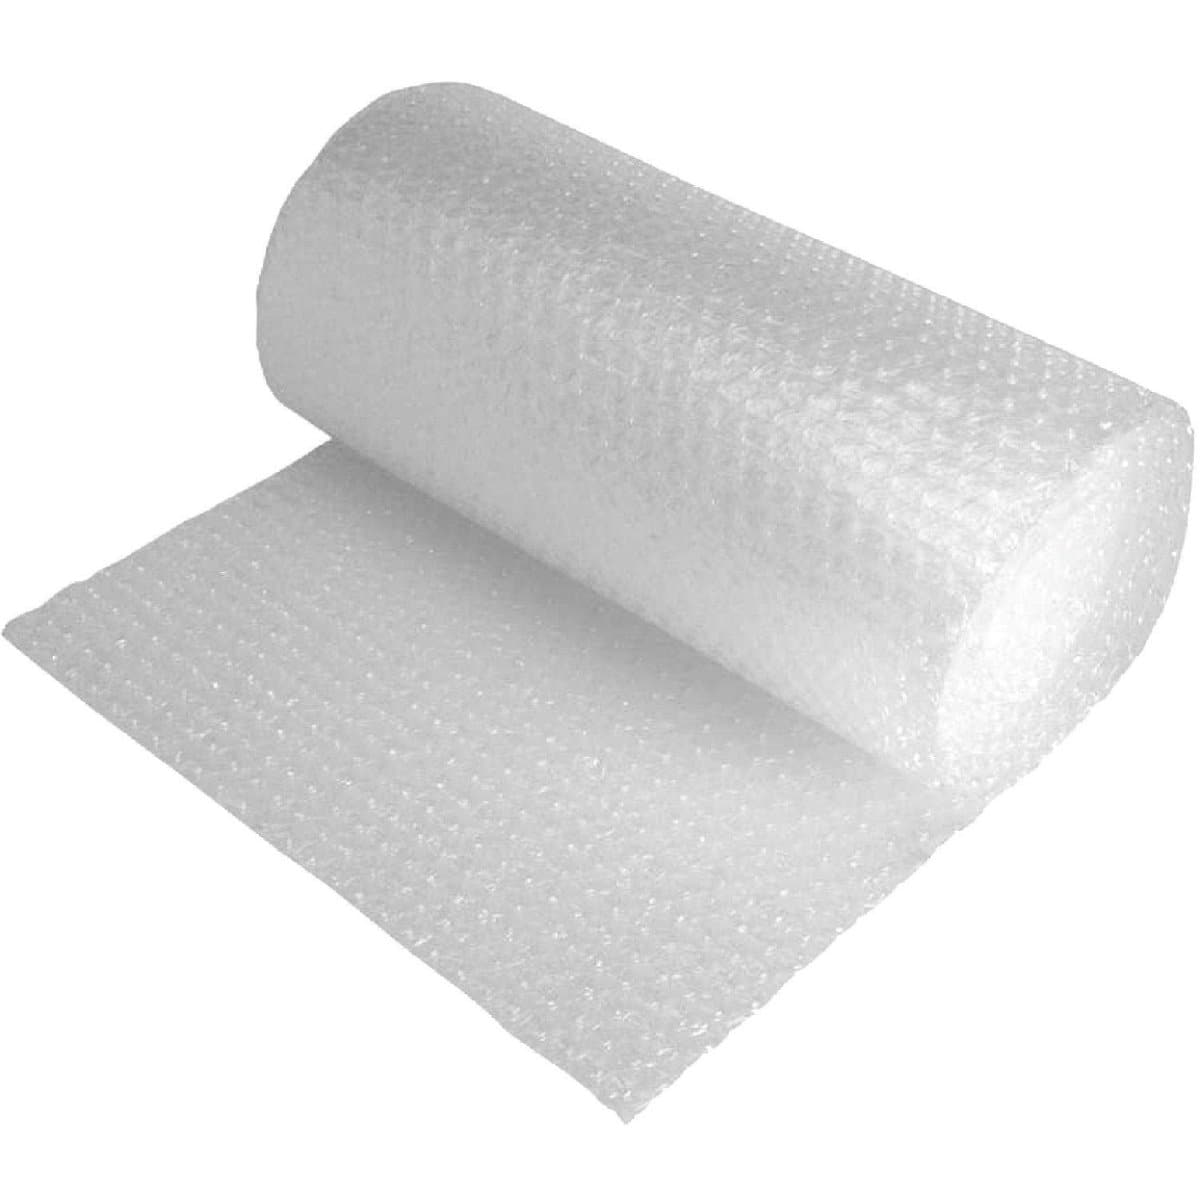 Tan Bulk Tissue Paper, Tissue Paper, Bulk Tissue Paper, Gift Wrapping,  Packaging, Tan, Gift Packaging, Crafts Supply, Beige, Kraft